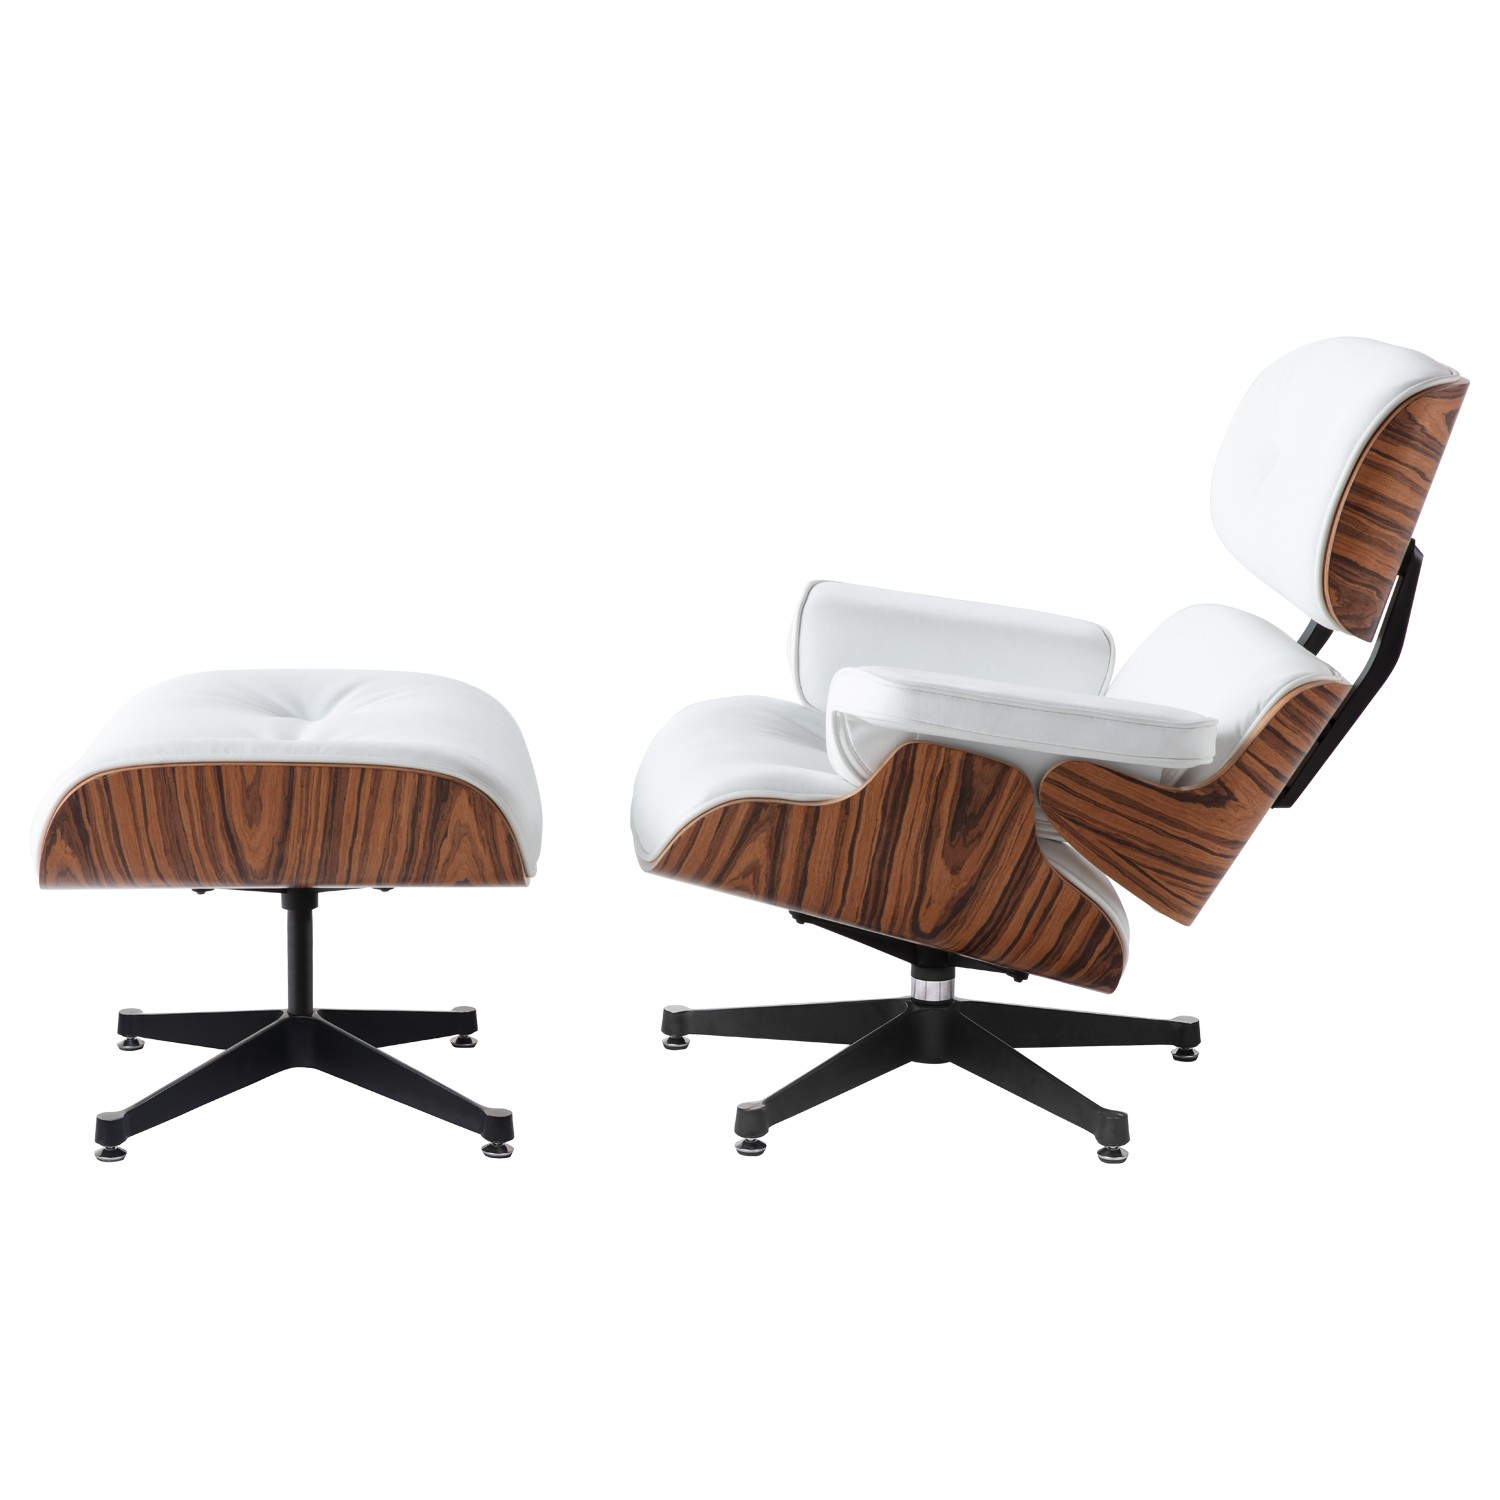 Pompeii Productie Toneelschrijver Eames Lounge Chair + Ottoman white| Retro Living Furniture